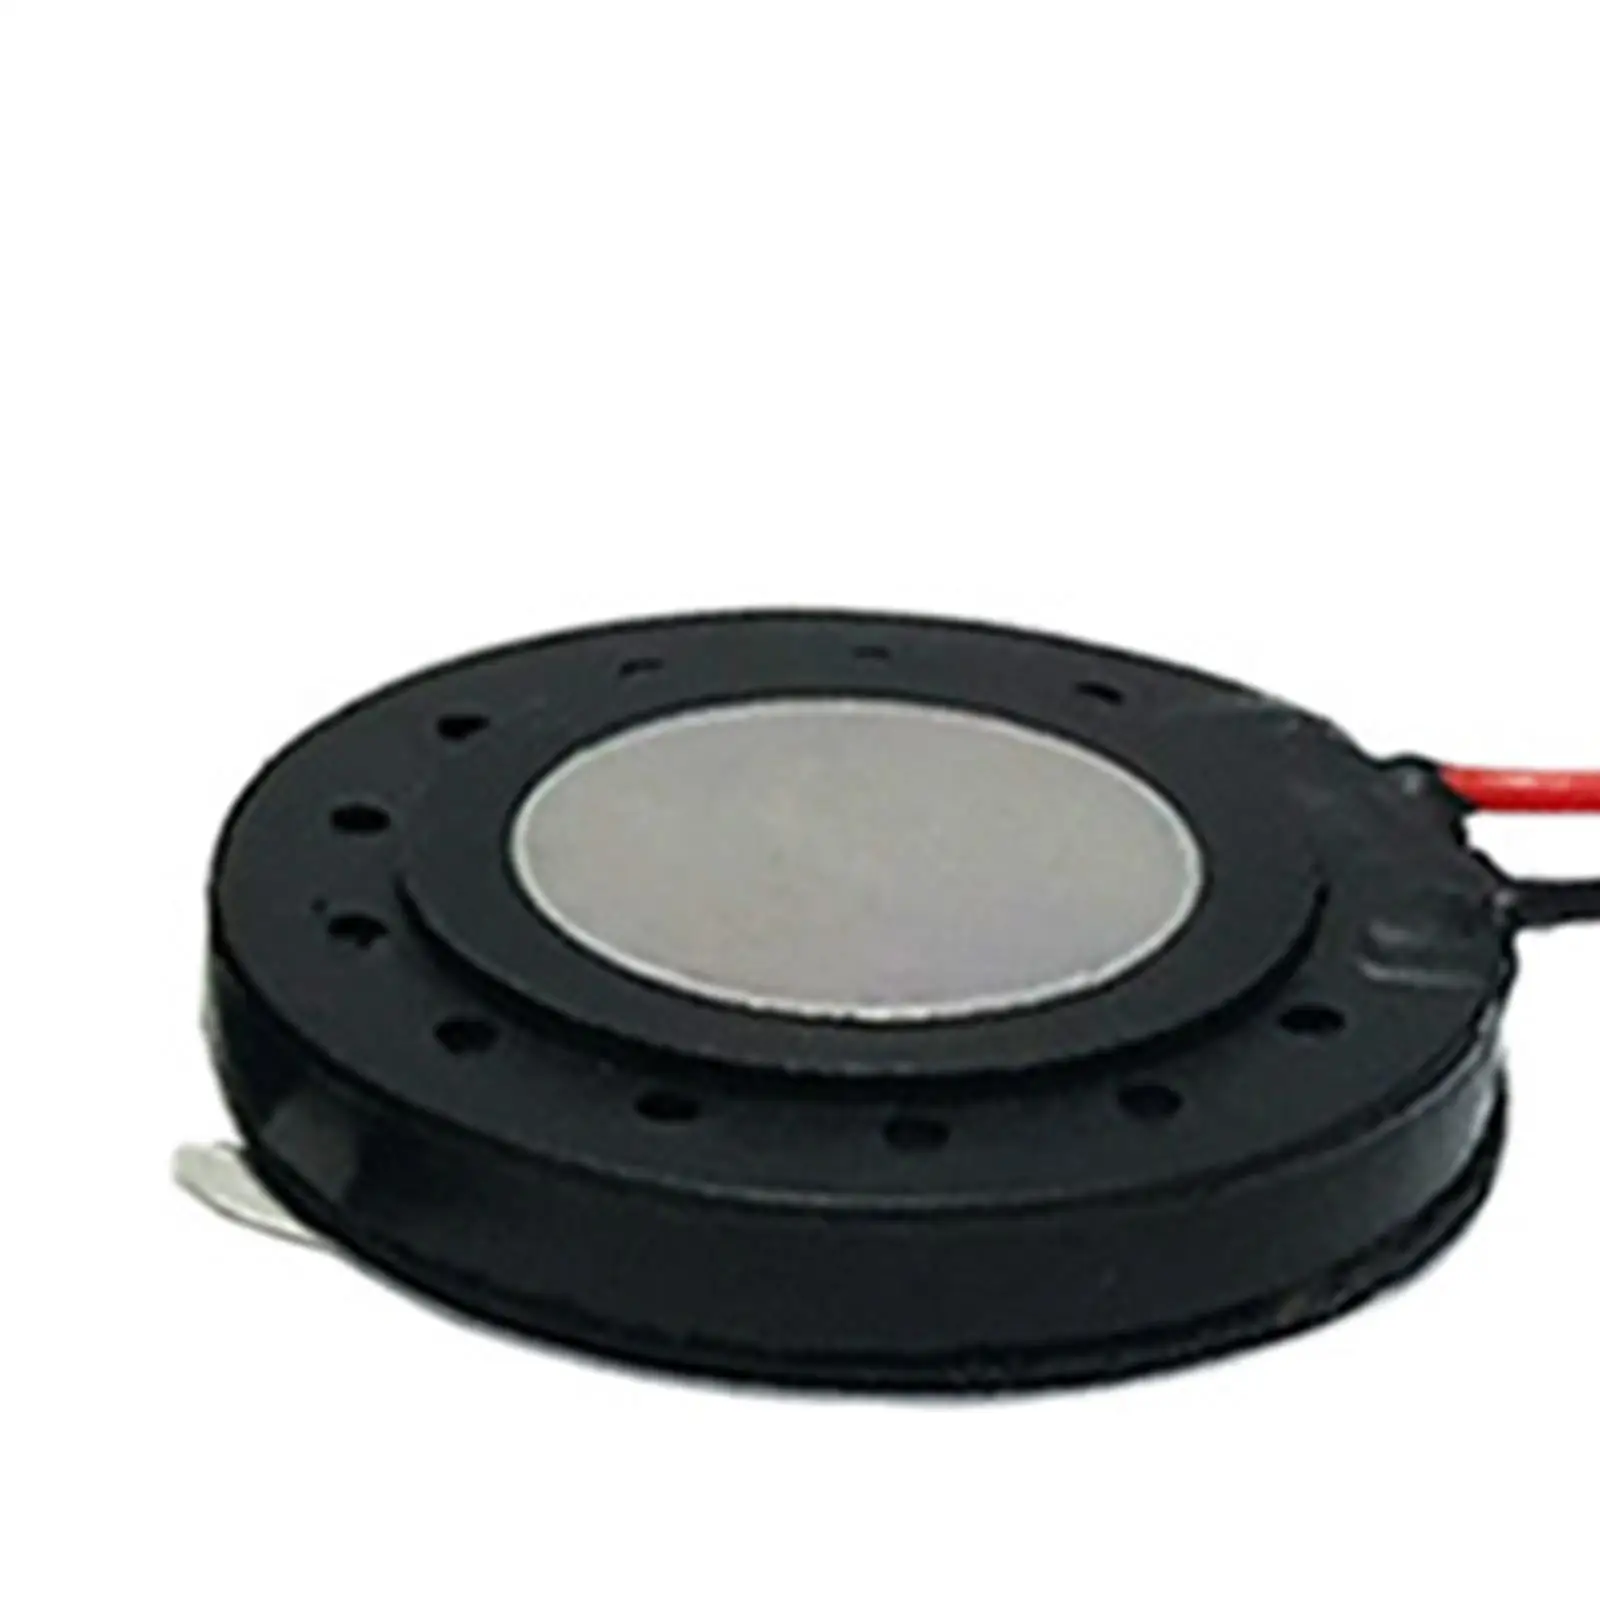 2Pcs 1W 8 Ohm Internal Magnet Speaker Buzzer Small Speaker for Fingerprint Lock Speaker Toys Audio Parts Micro Internal Speaker